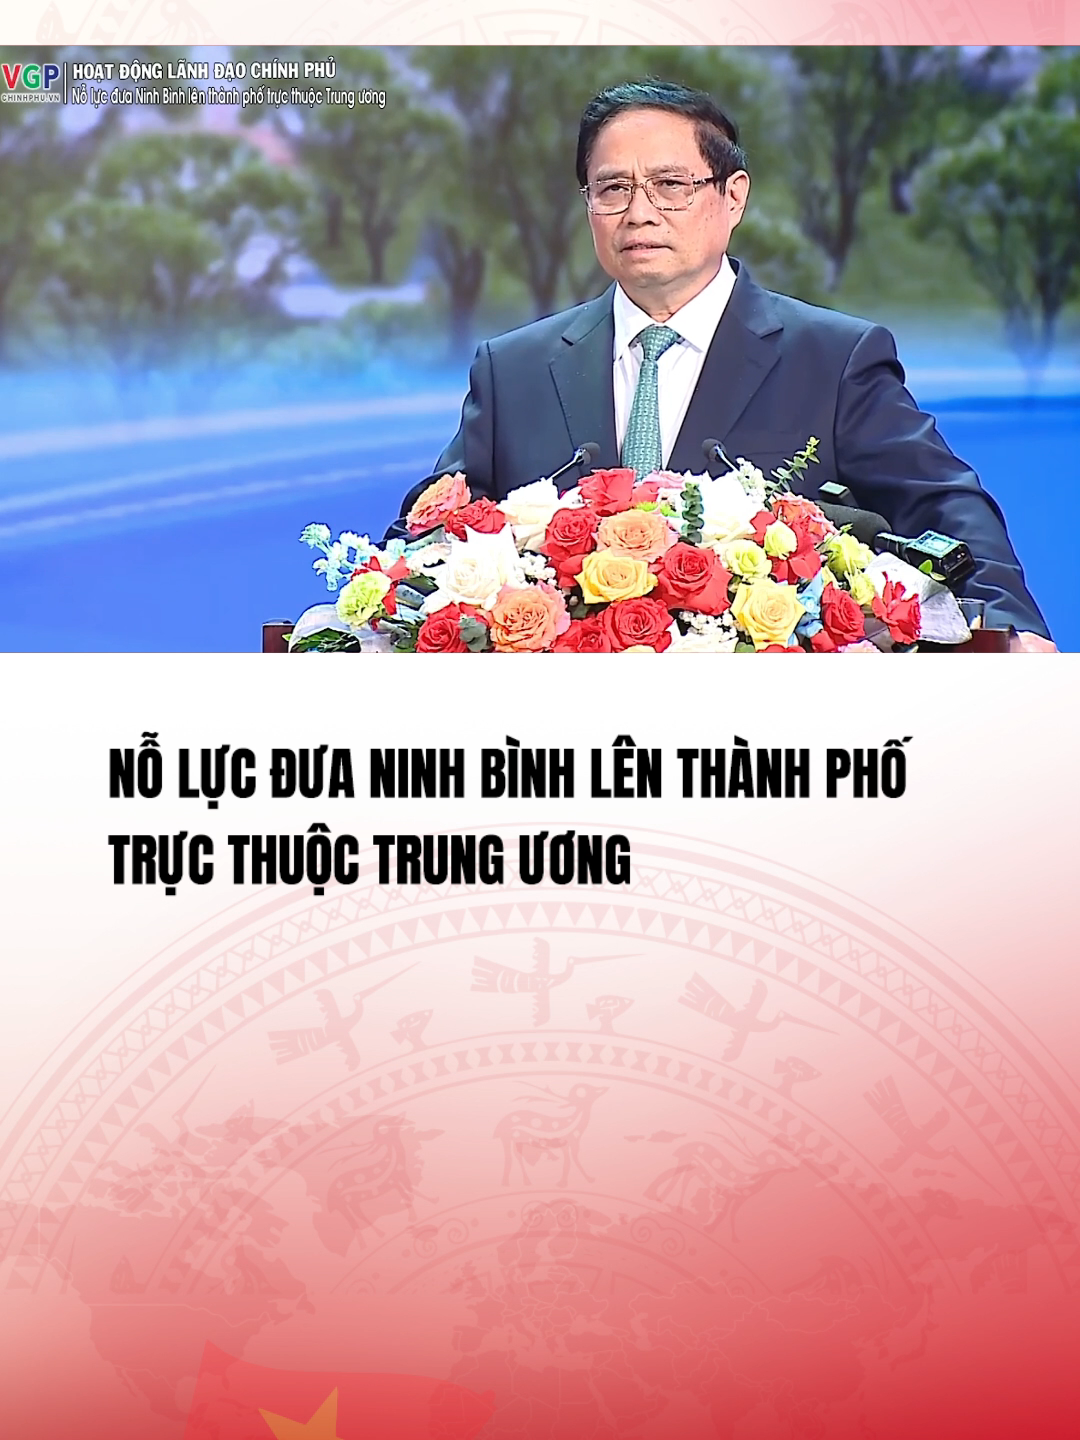 (Nguồn: chinhphu.vn) Nỗ lực đưa Ninh Bình lên Thành phố trực thuộc Trung ương#vtvcabtintuc#vtvcab#tiktoknews